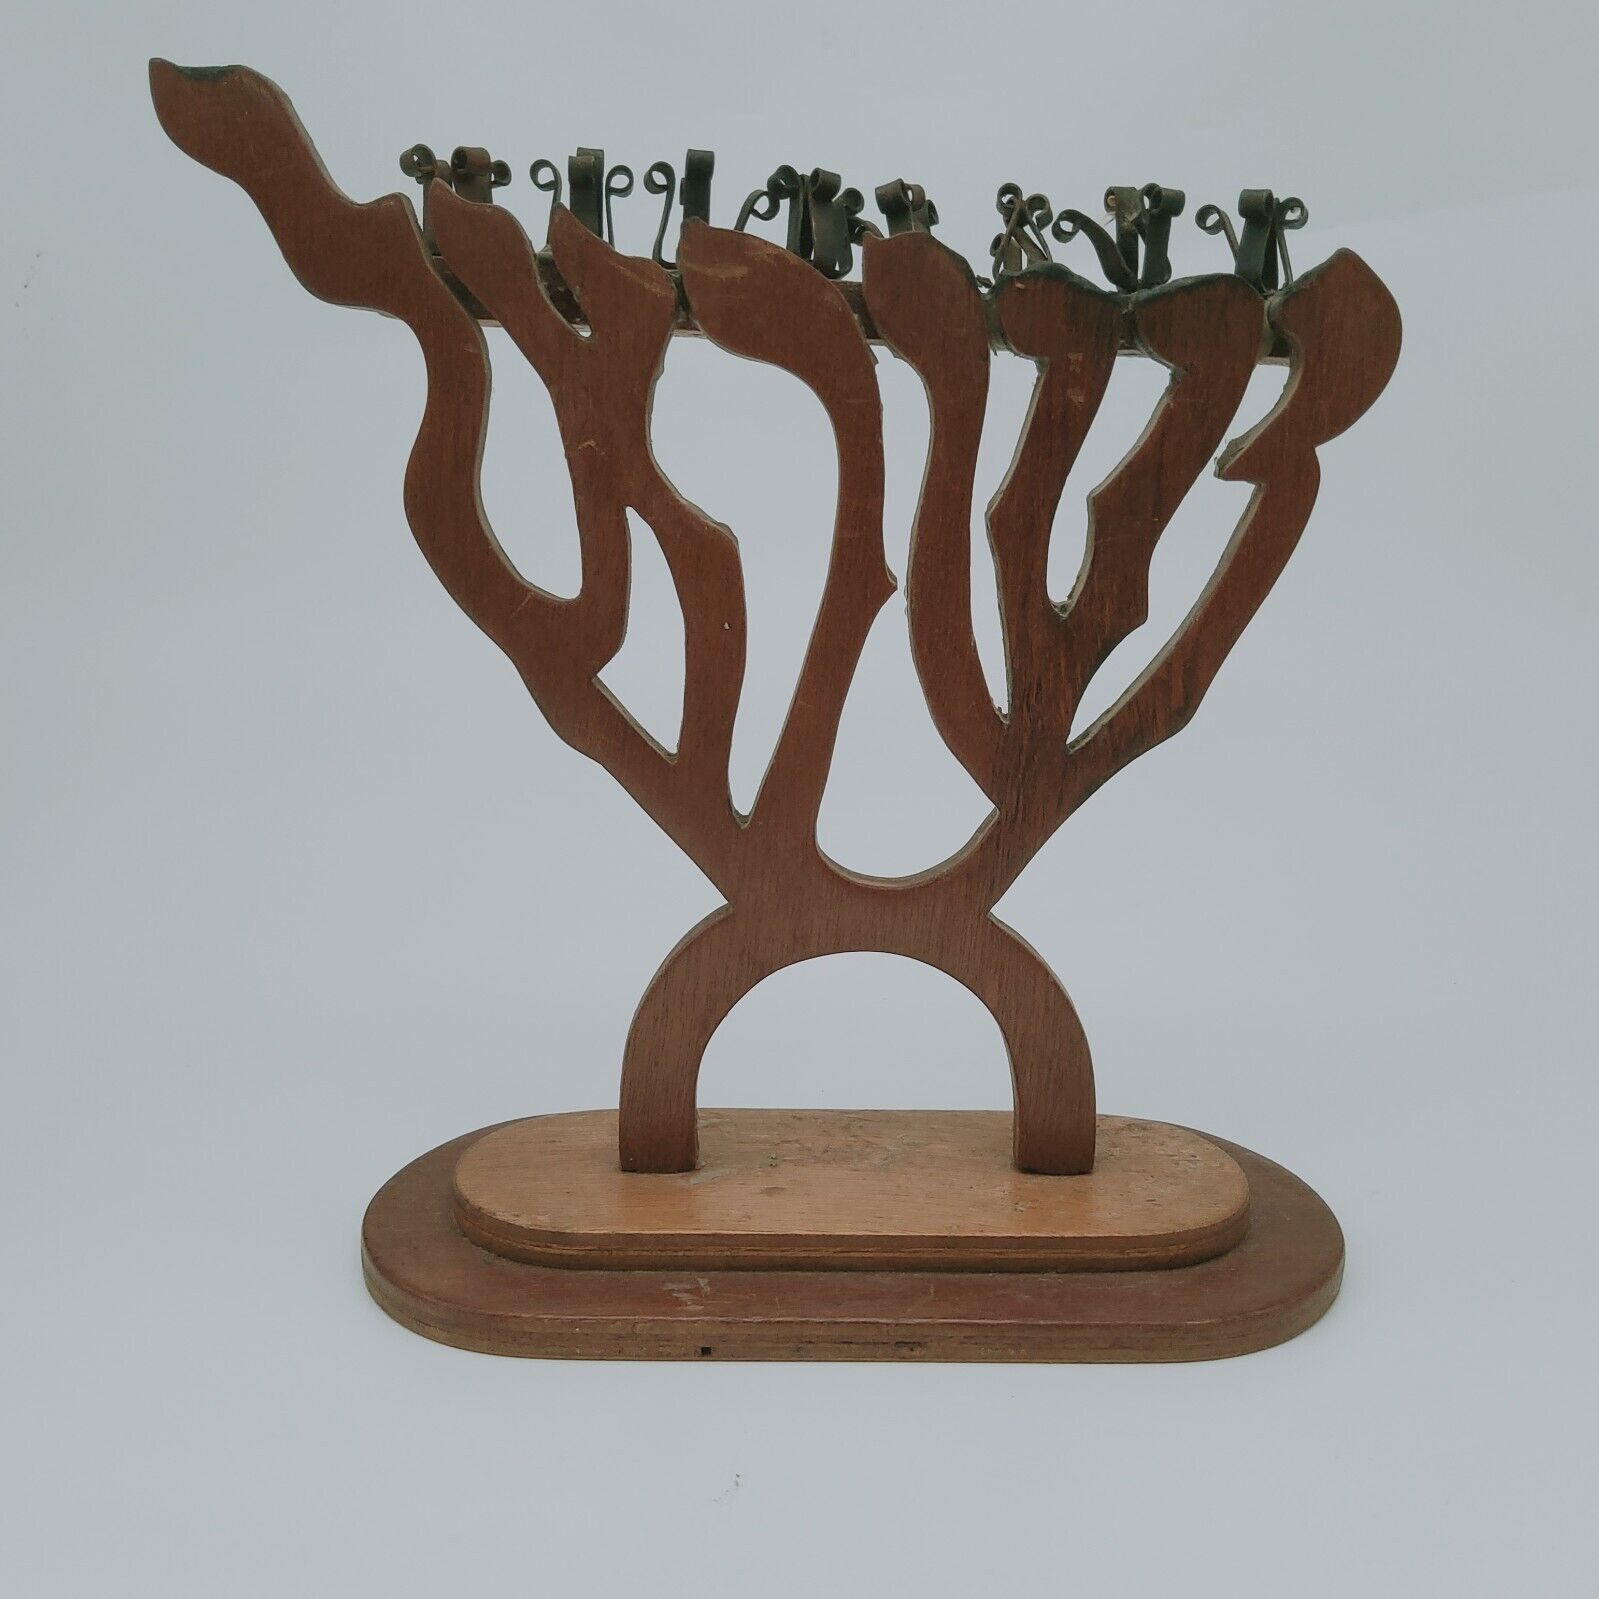 GORGEOUS Vintage Wooden Hanukkah Menorah - Made in Israel